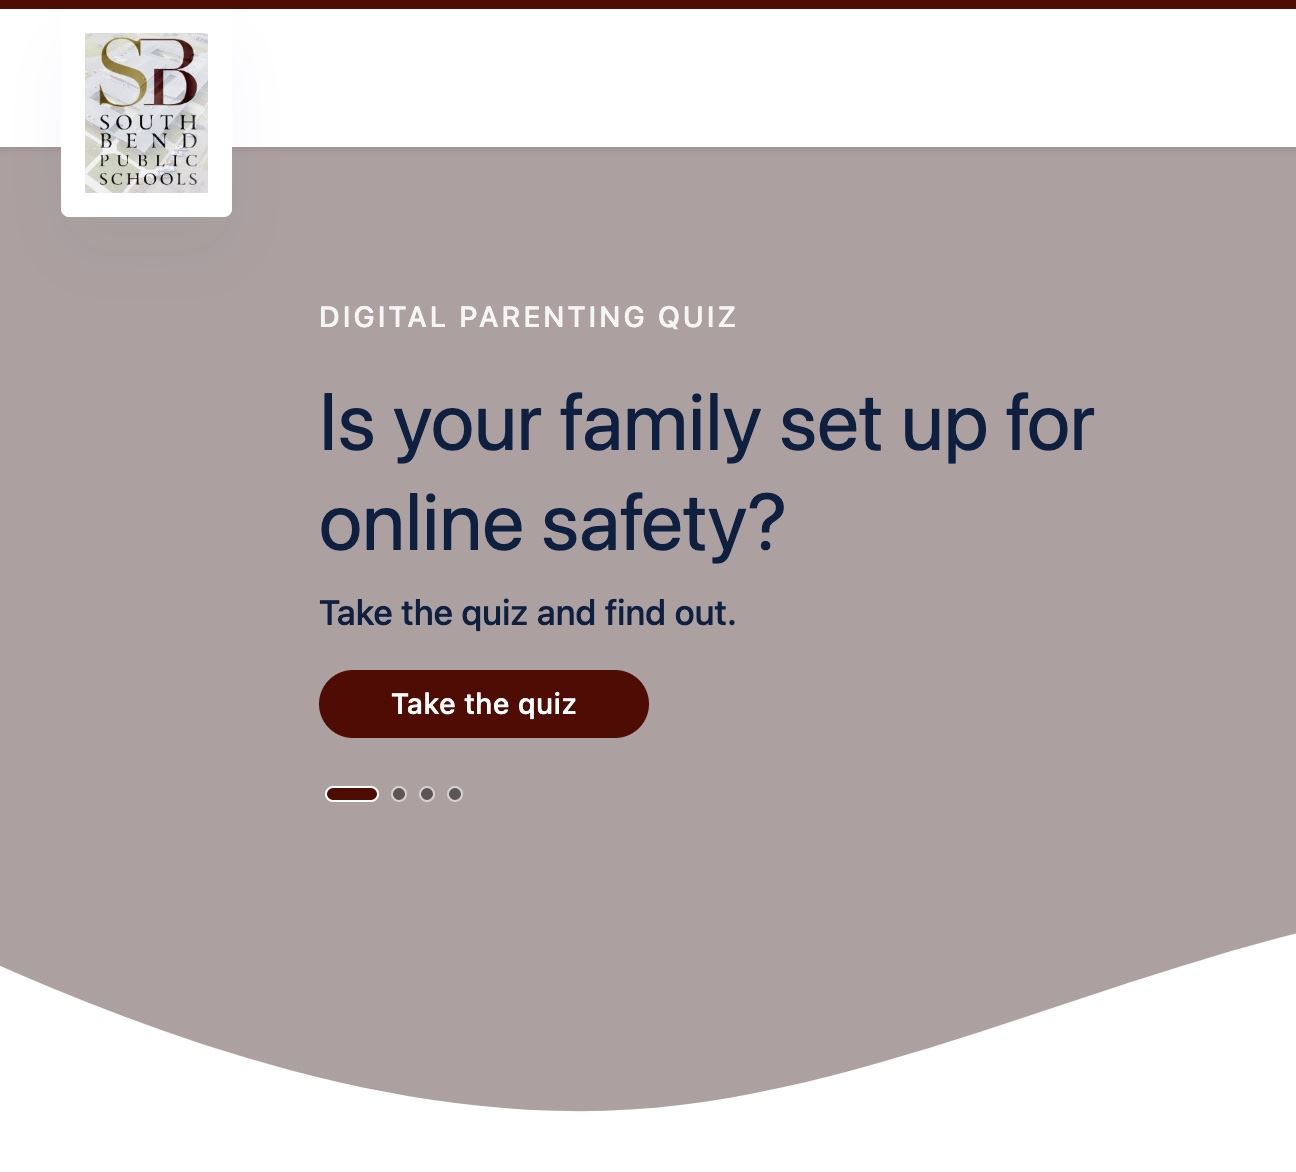  Online safety